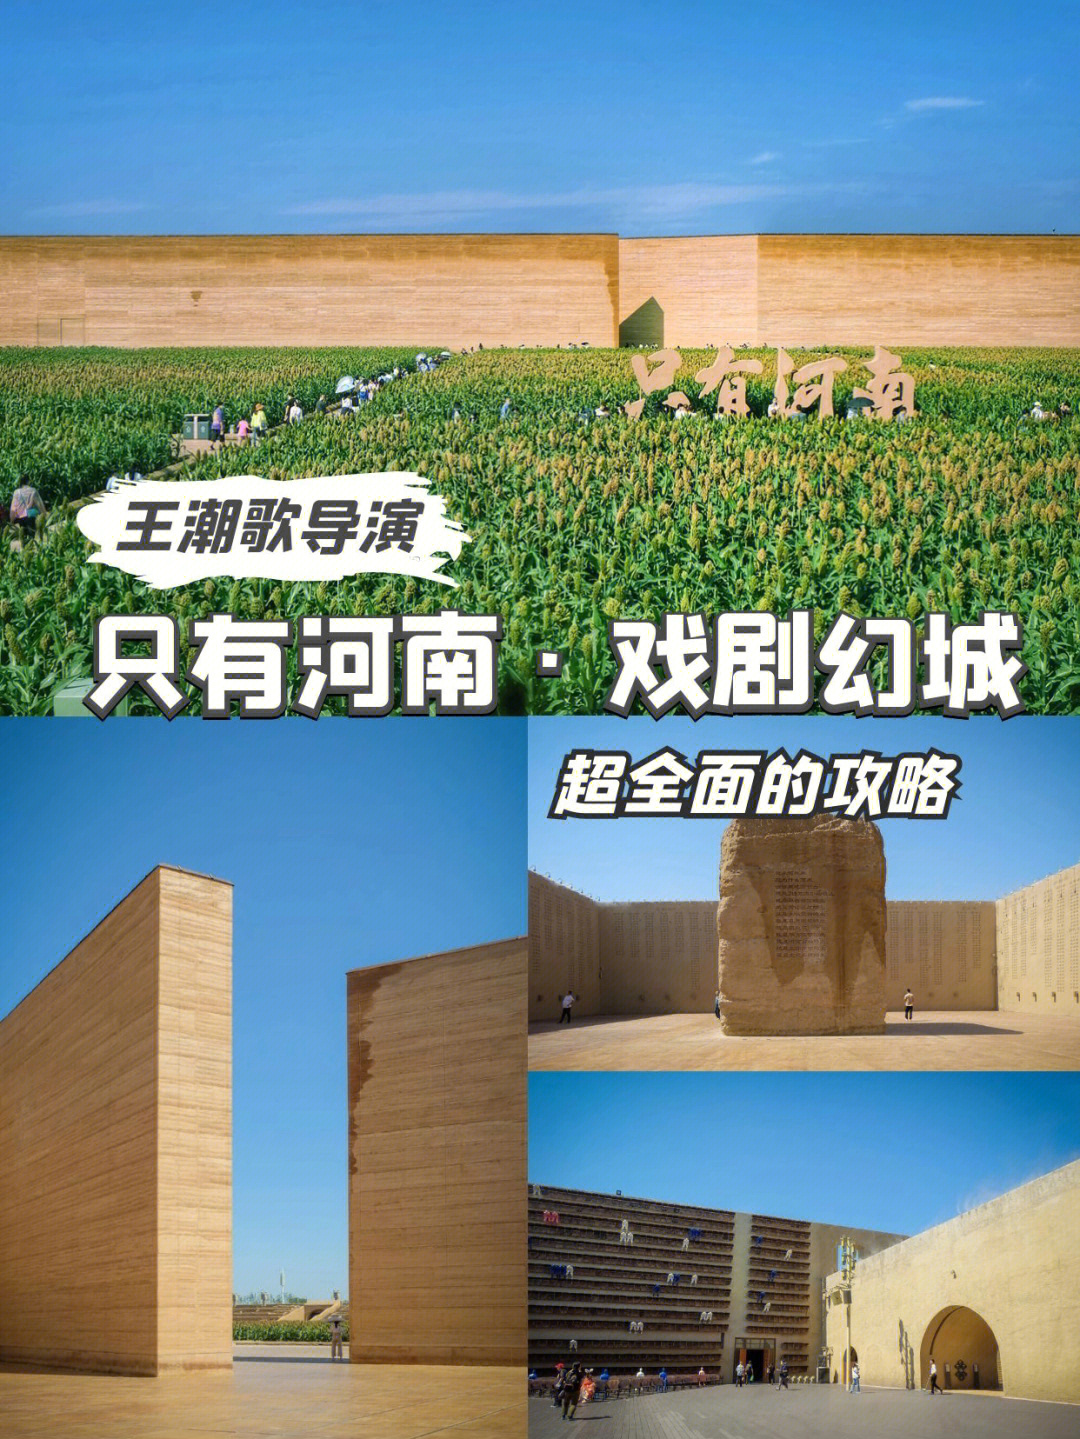 只有河南戏剧幻城:王潮歌与建业集团联手打造的戏剧群落